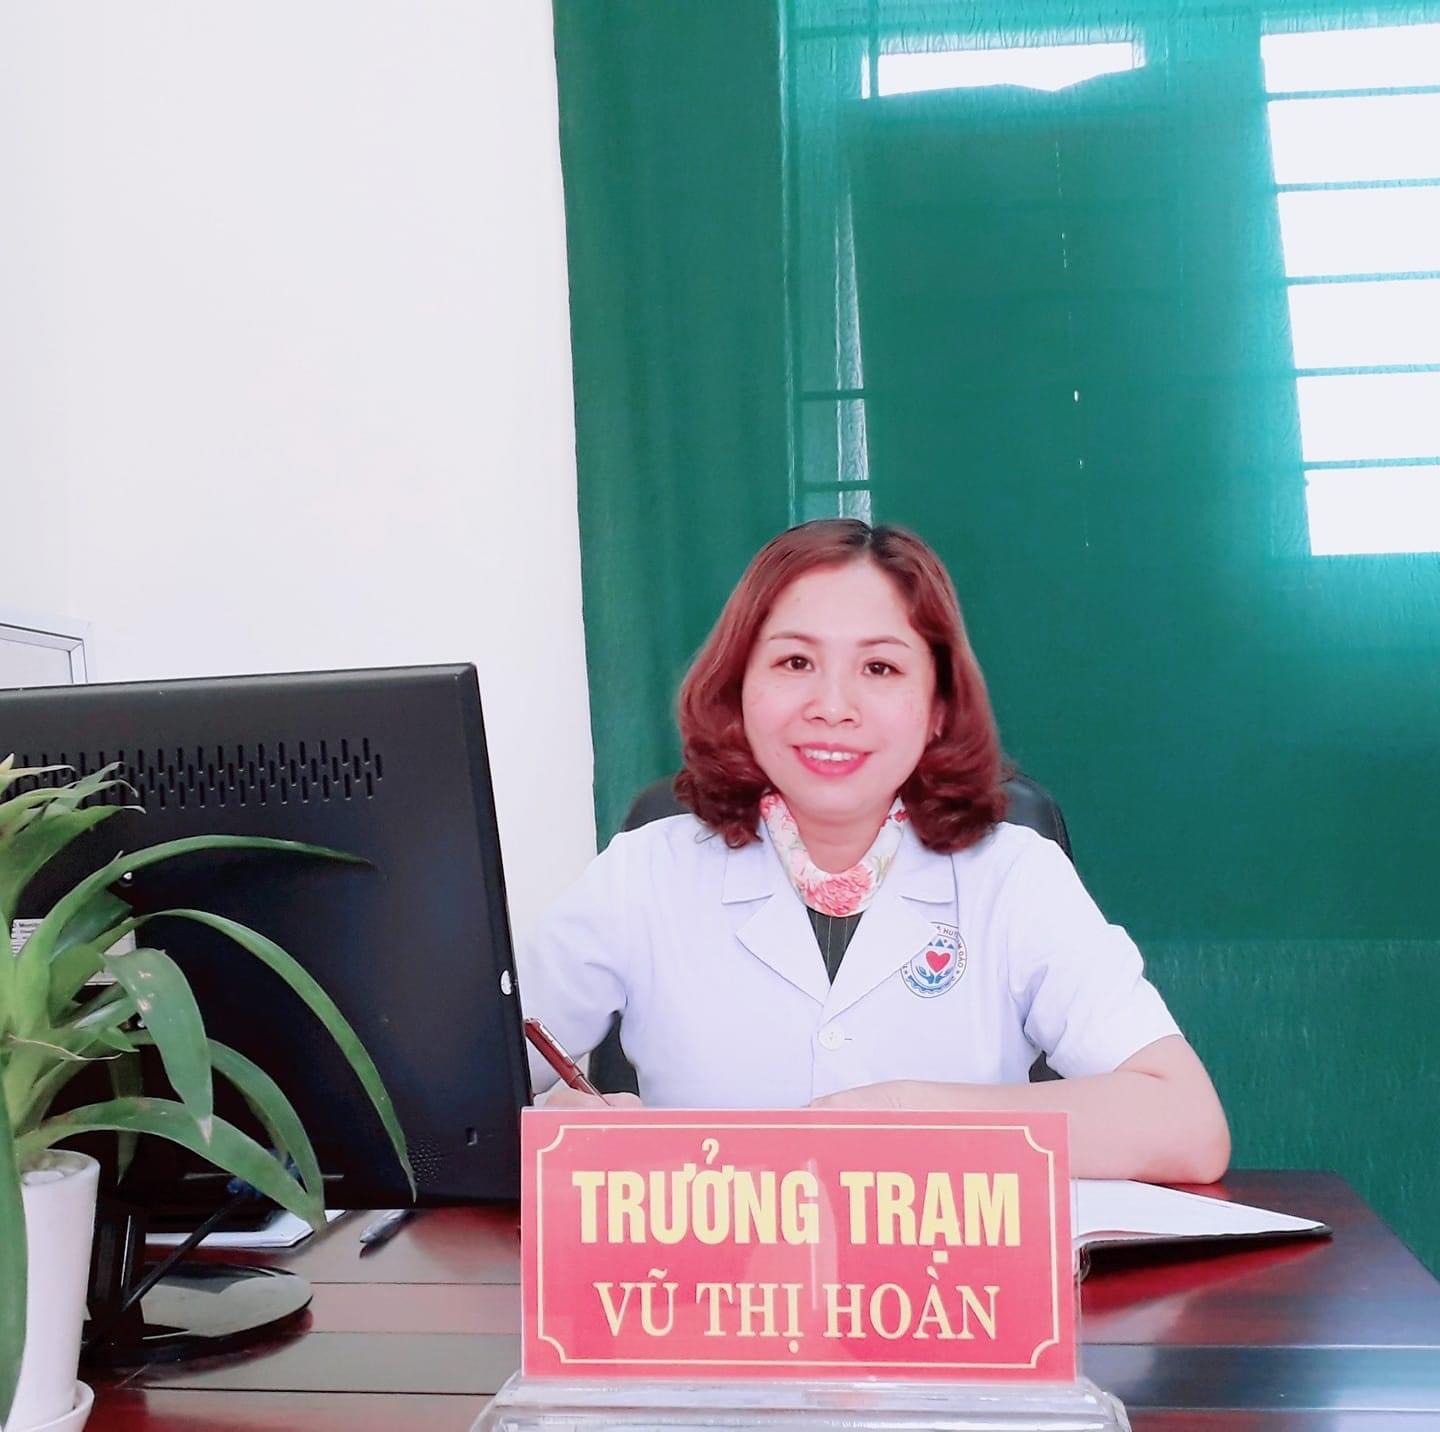 Bác sĩ Vũ Thị Hoàn - trưởng Trạm y tế xã Yên Dương. Ảnh: Vũ Hoàn